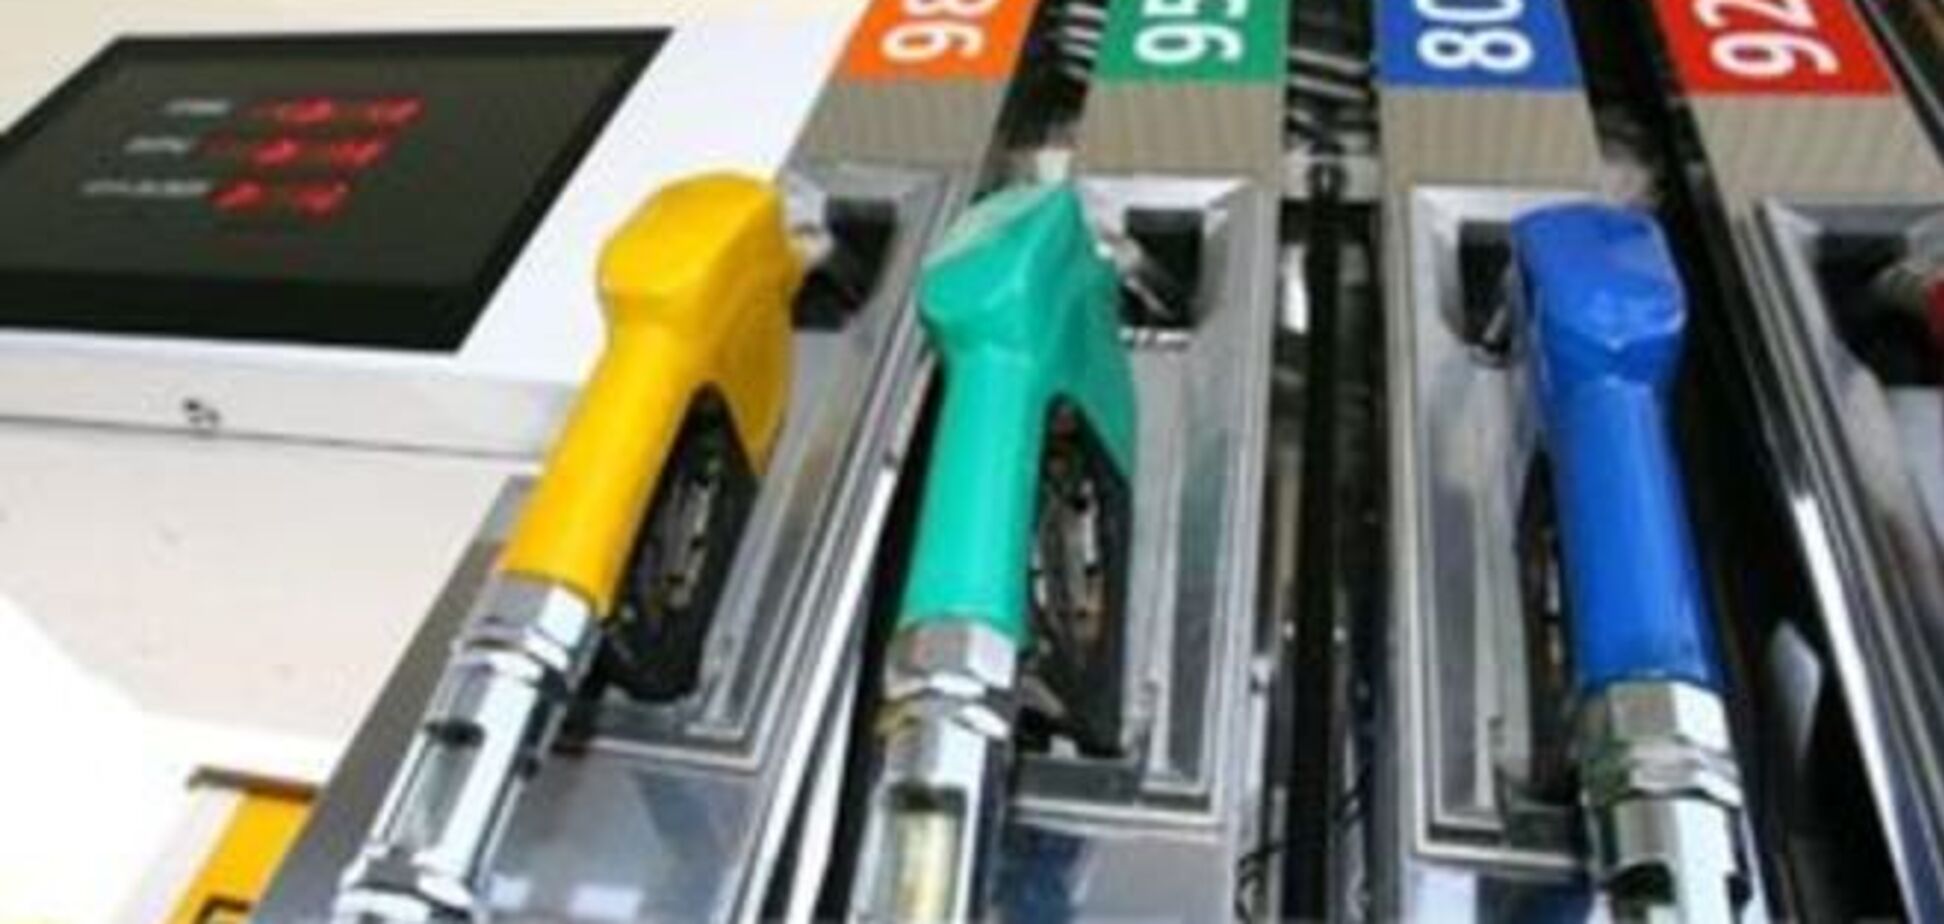 Цена на бензин может вырасти до 50 грн за литр - Куюн